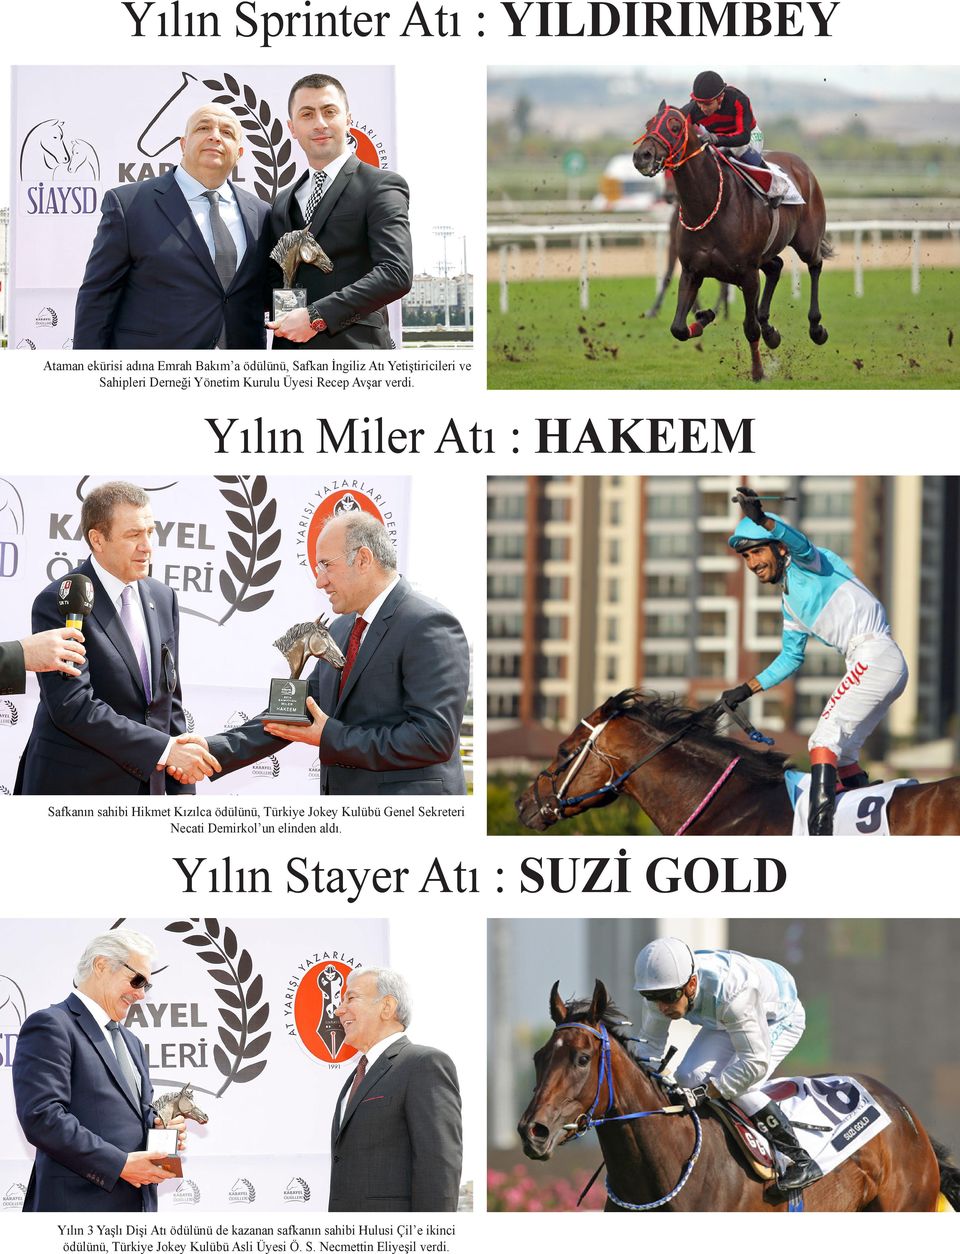 Yılın Miler Atı : HAKEEM Safkanın sahibi Hikmet Kızılca ödülünü, Türkiye Jokey Kulübü Genel Sekreteri Necati Demirkol un